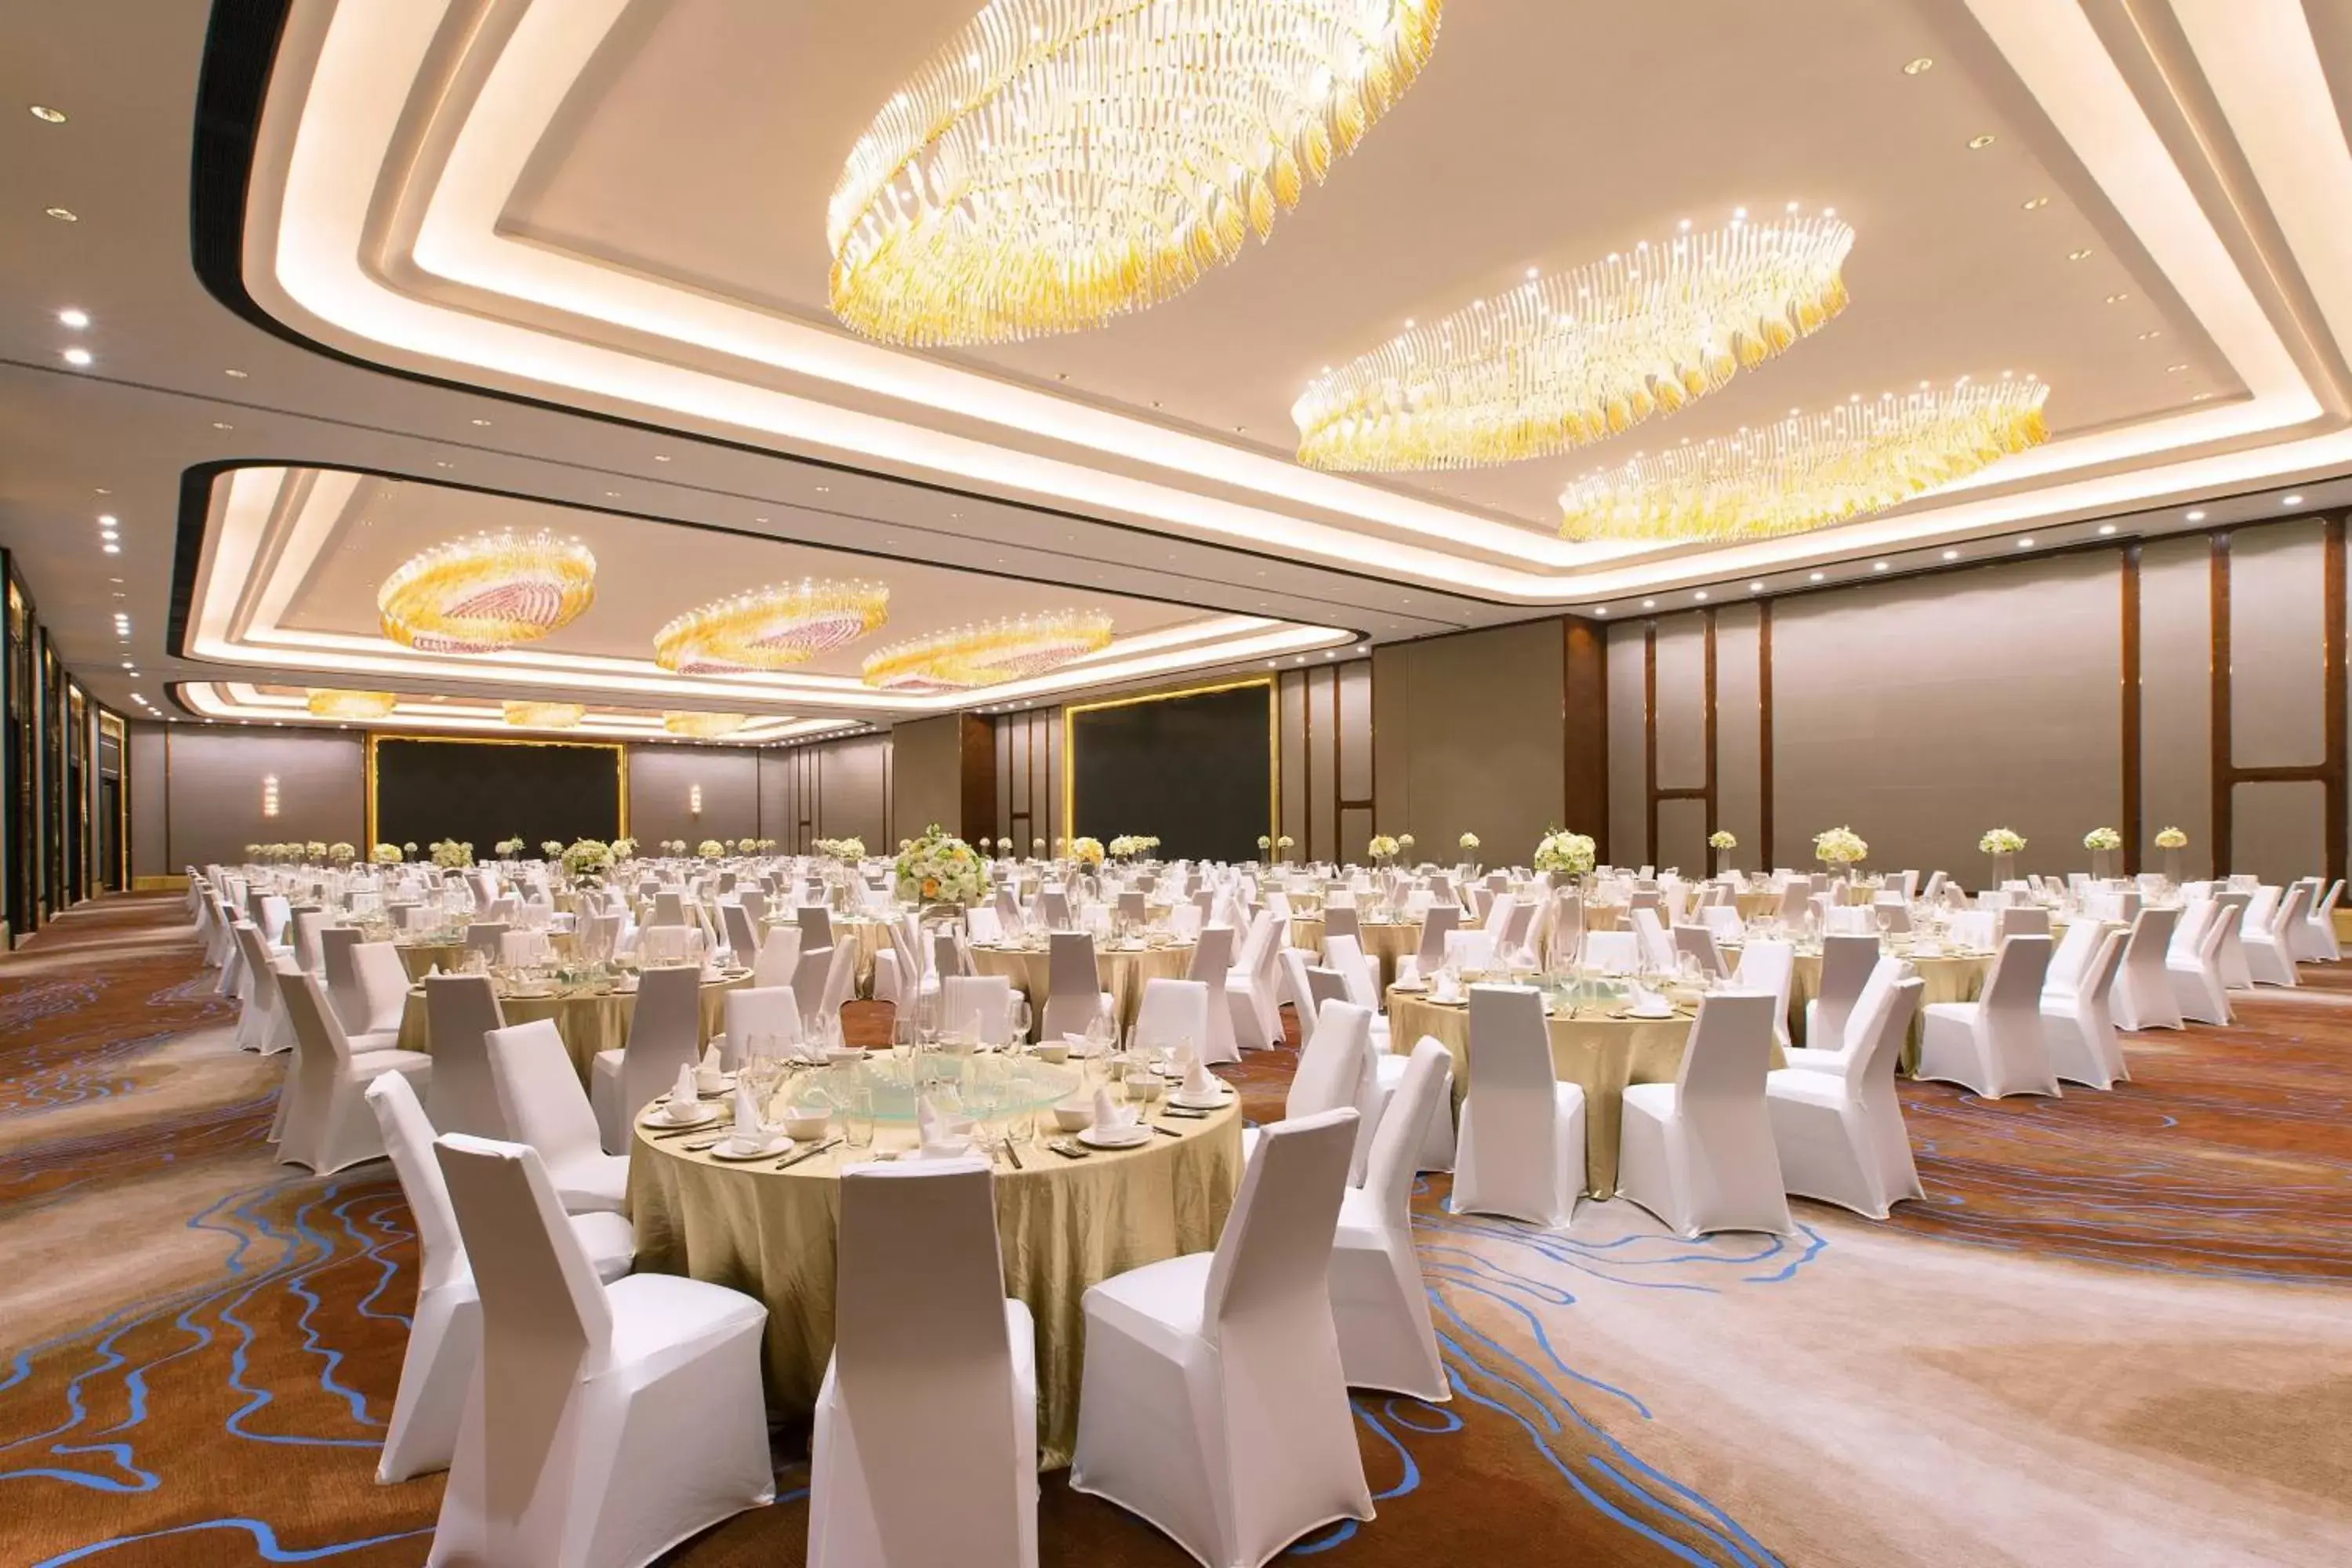 Banquet/Function facilities, Banquet Facilities in Sheraton Zhanjiang Hotel